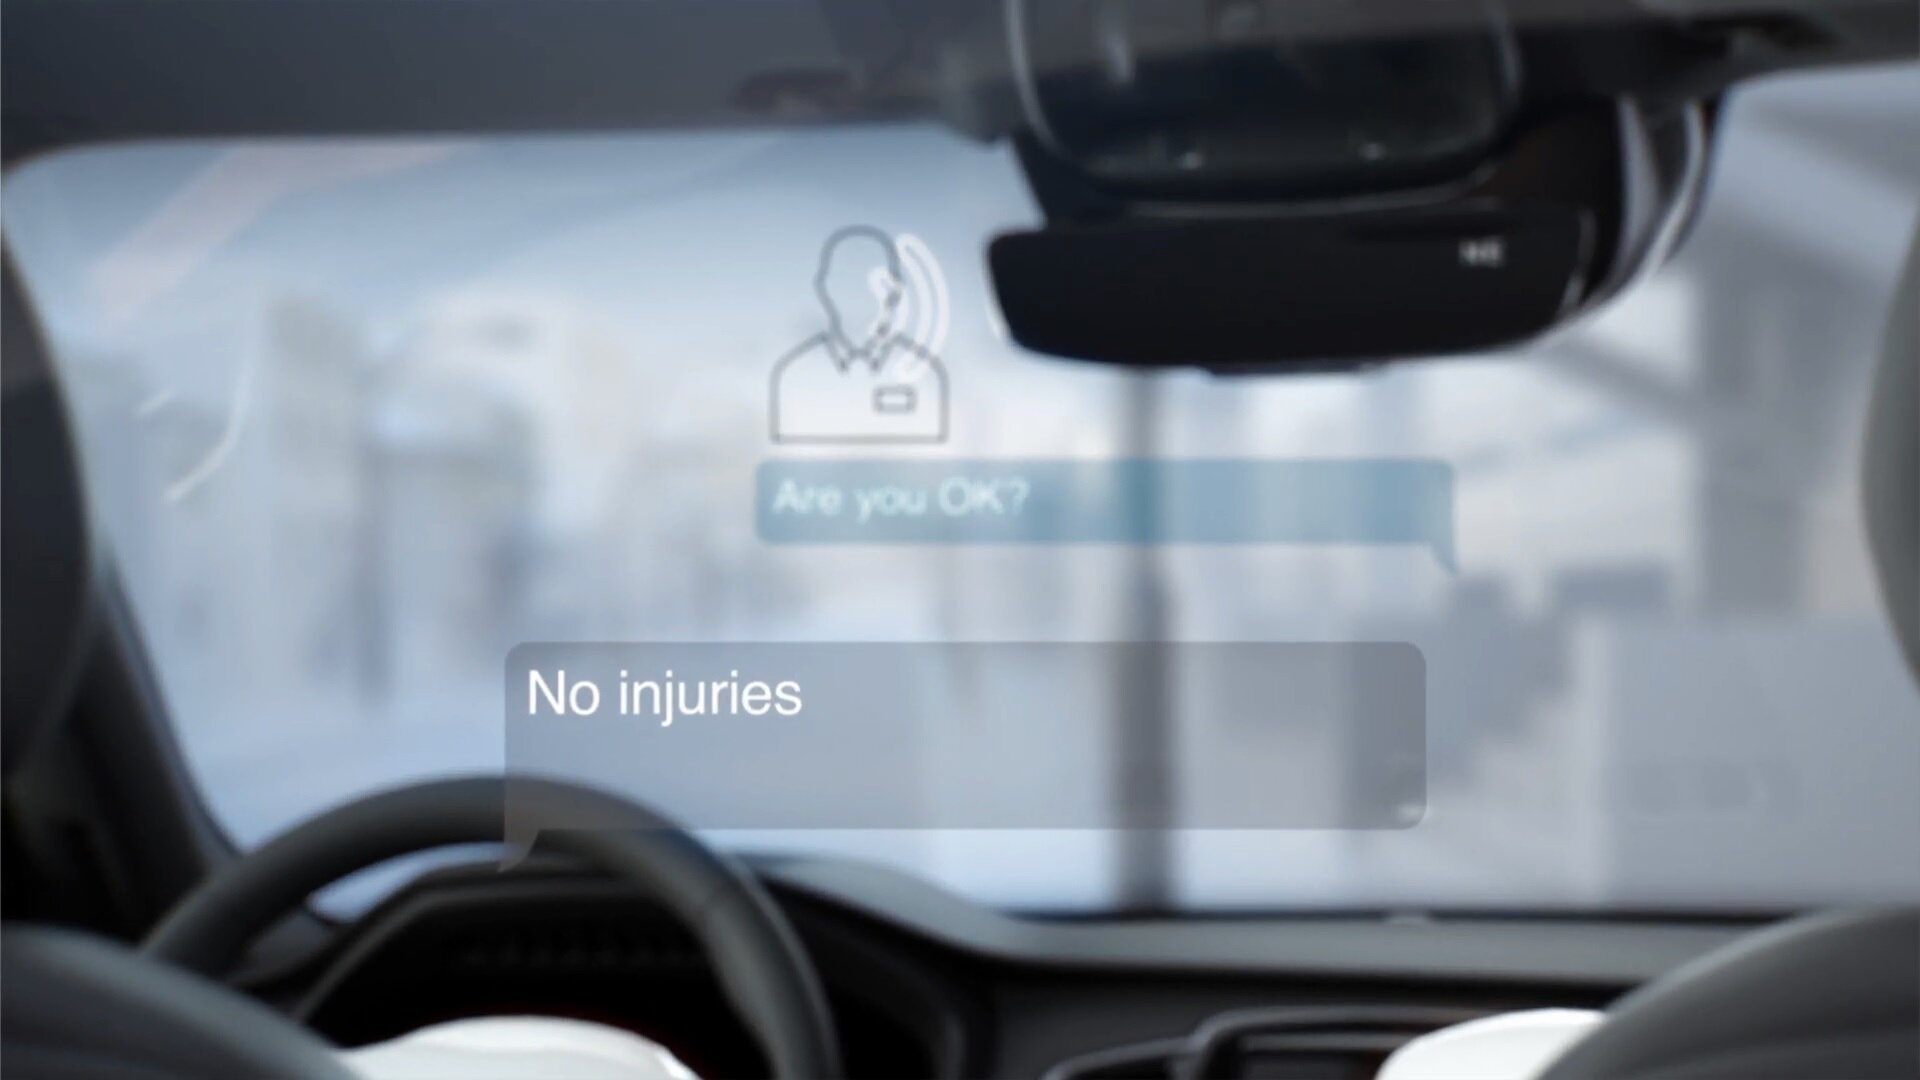 Το νέο app της Volvo σας λέει τι πρέπει να κάνετε μετά από κάποιο τροχαίο ατύχημα